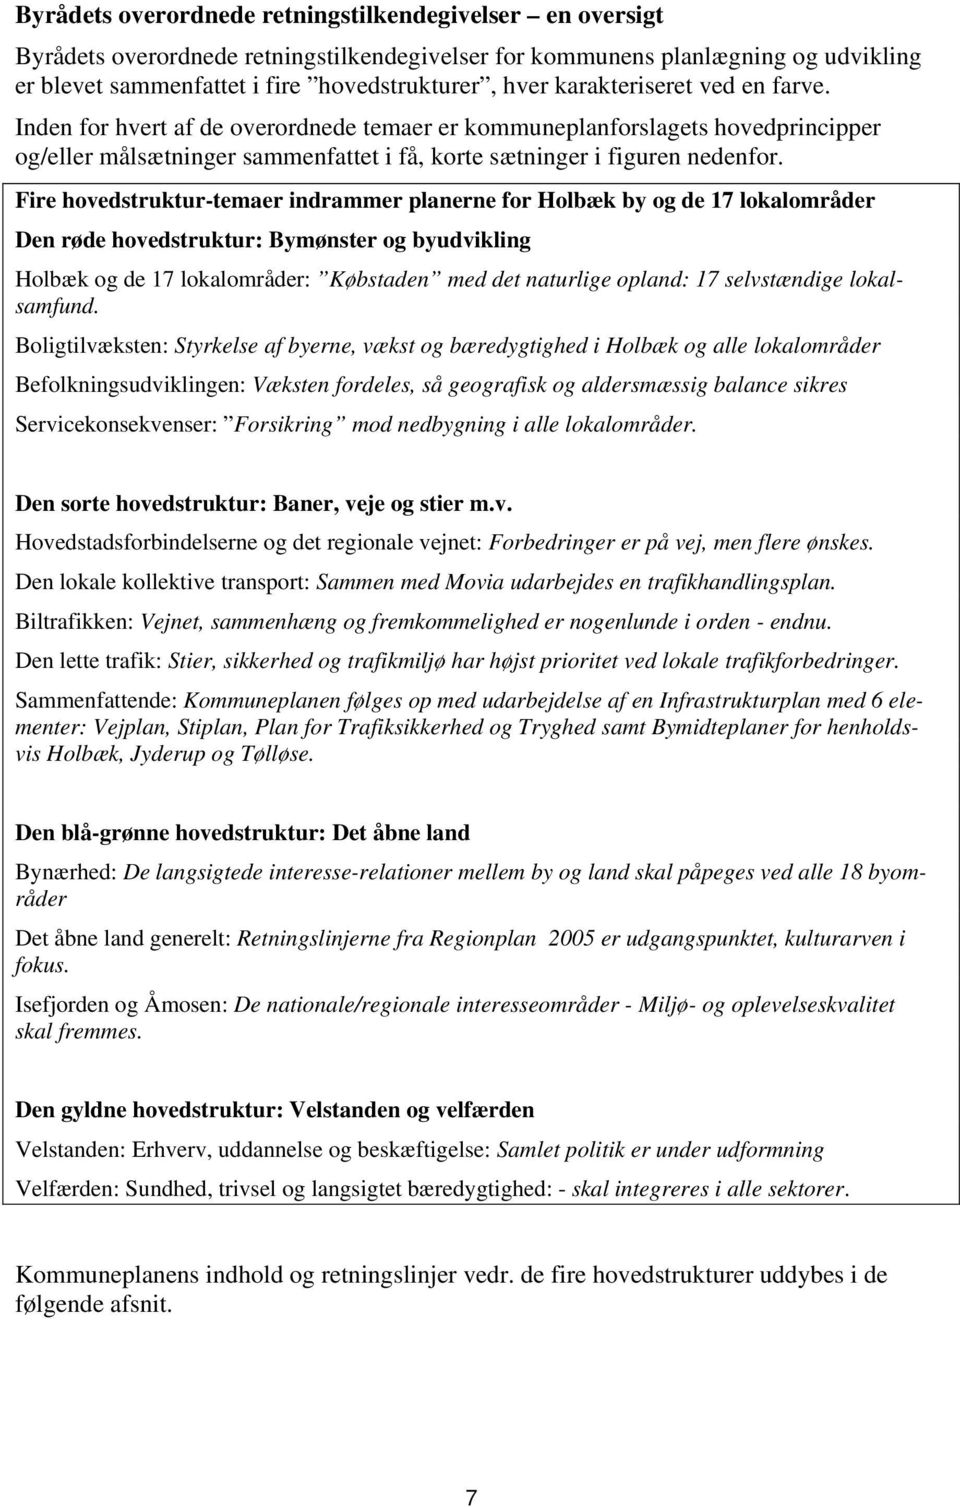 Fire hovedstruktur-temaer indrammer planerne for Holbæk by og de 17 lokalområder Den røde hovedstruktur: Bymønster og byudvikling Holbæk og de 17 lokalområder: Købstaden med det naturlige opland: 17